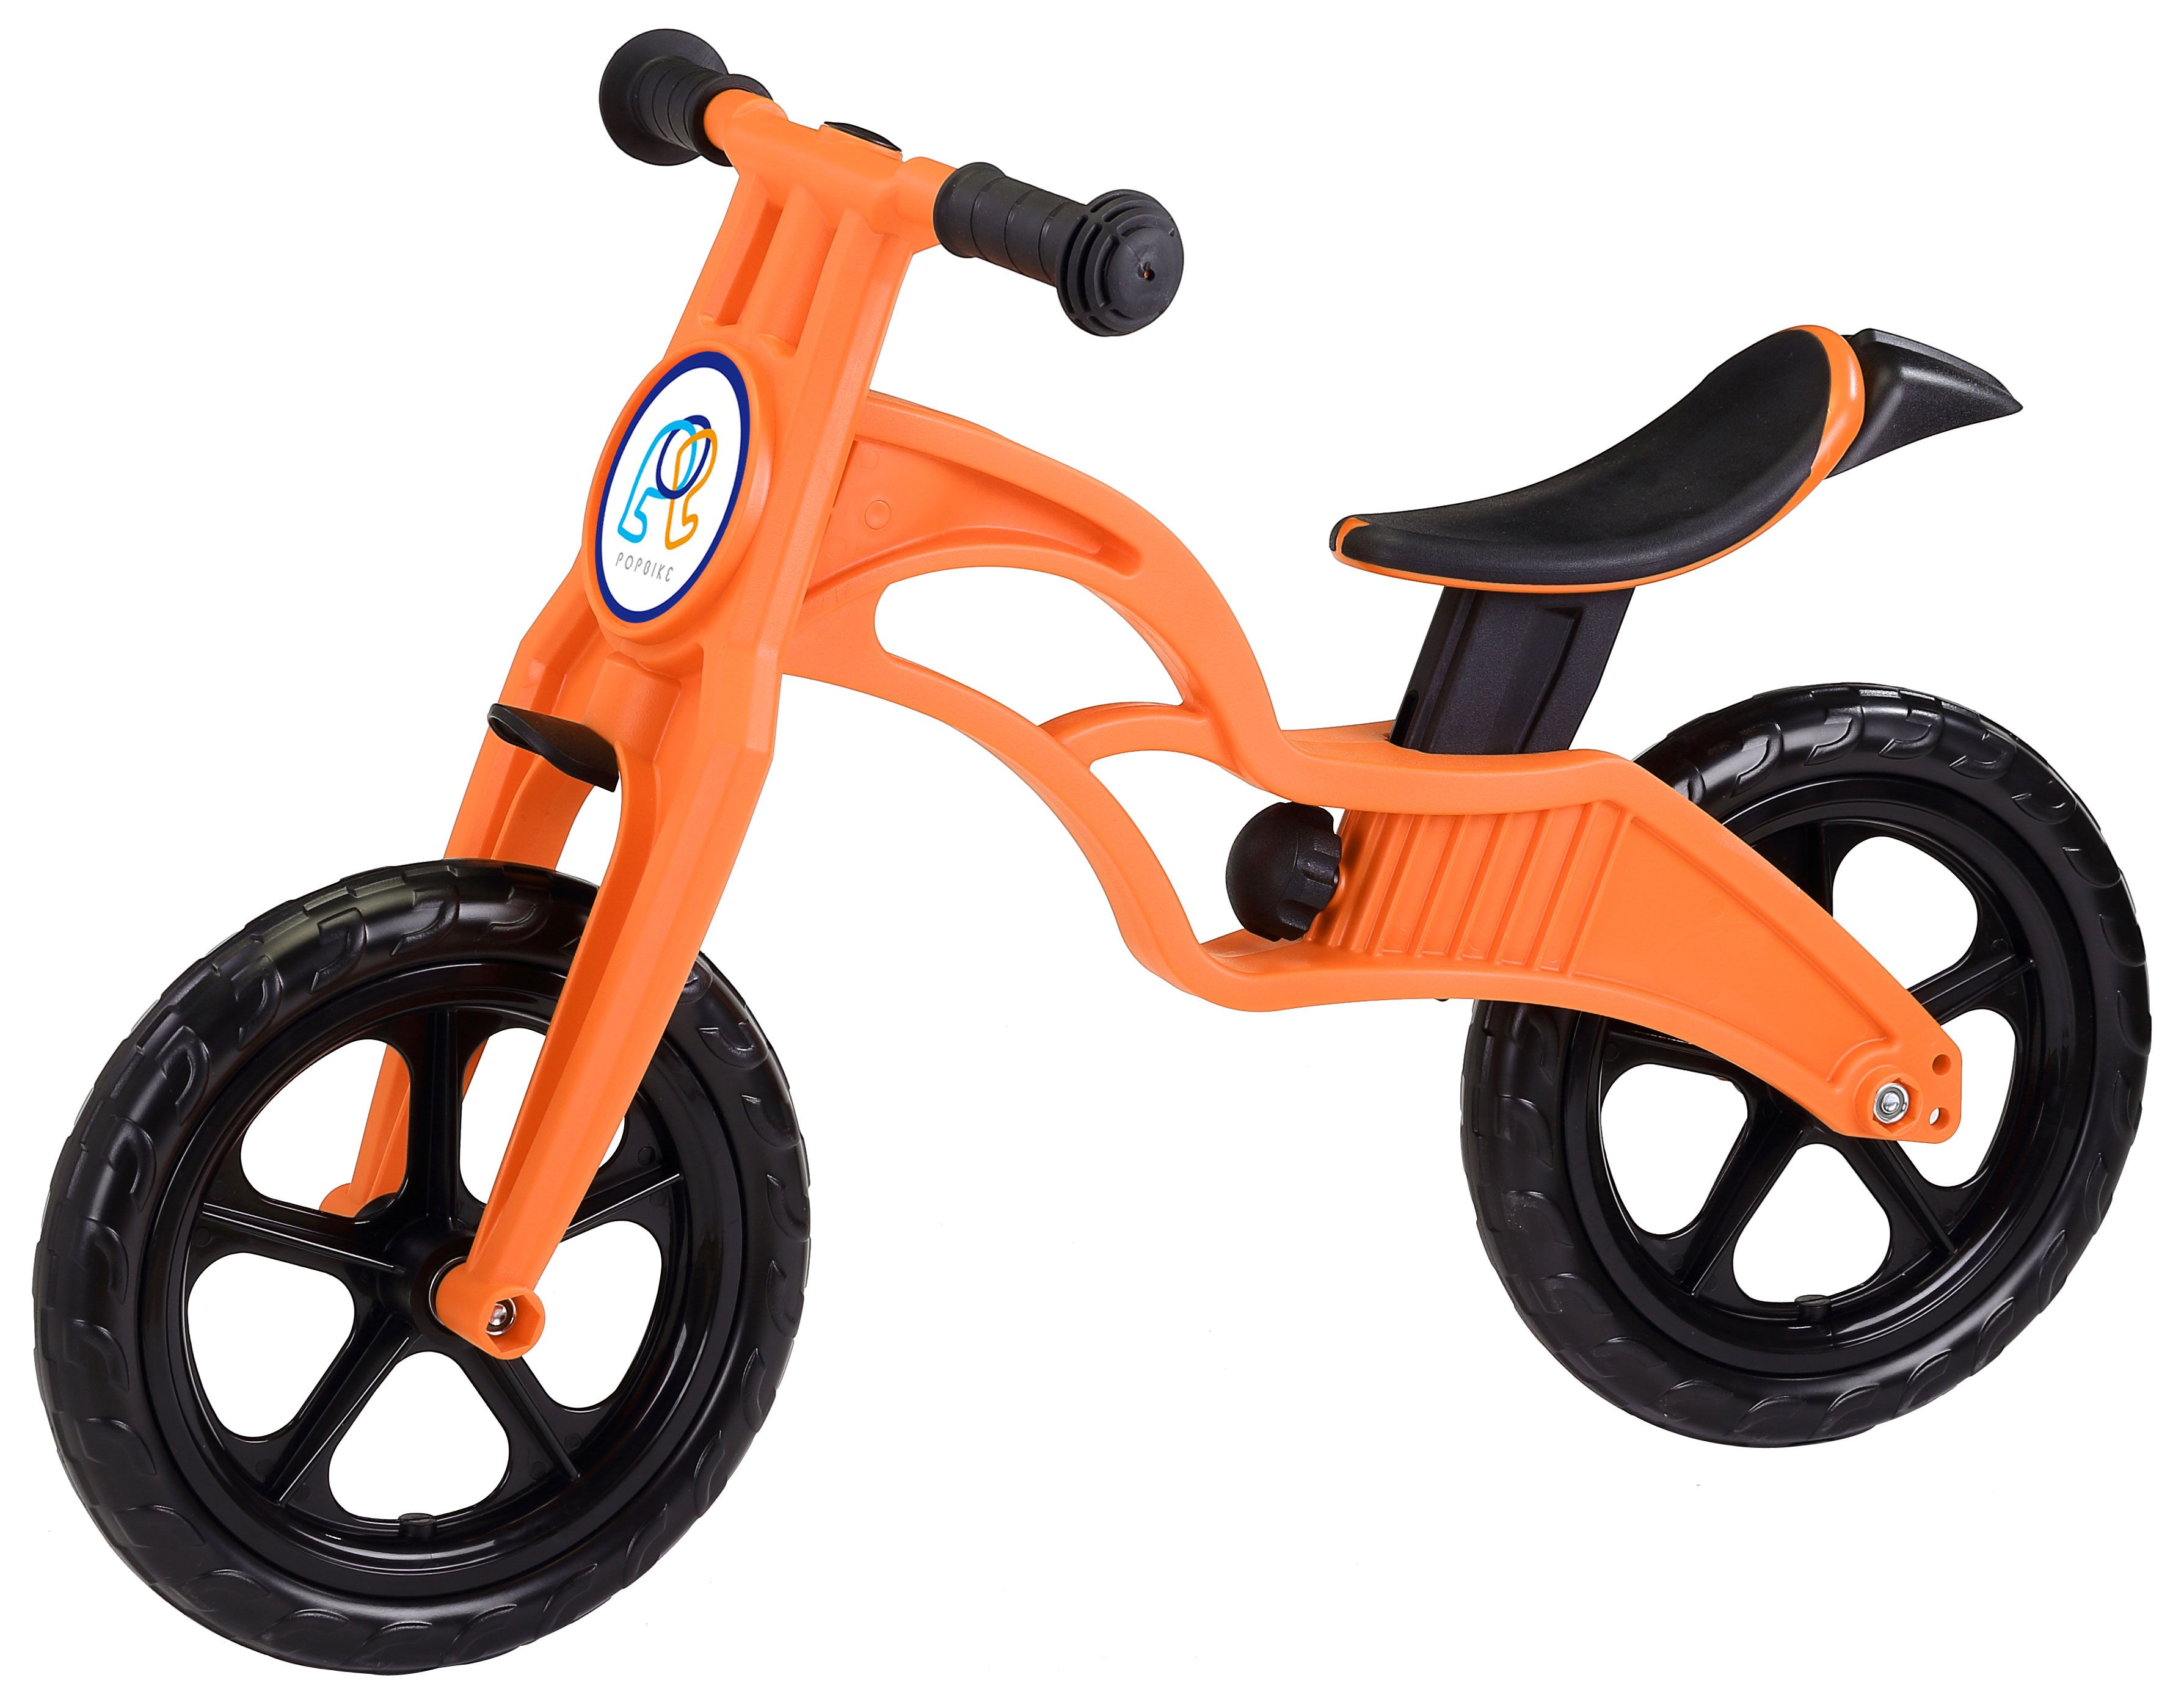  Отзывы о Детском велосипеде Pop Bike Sprint 12 2016